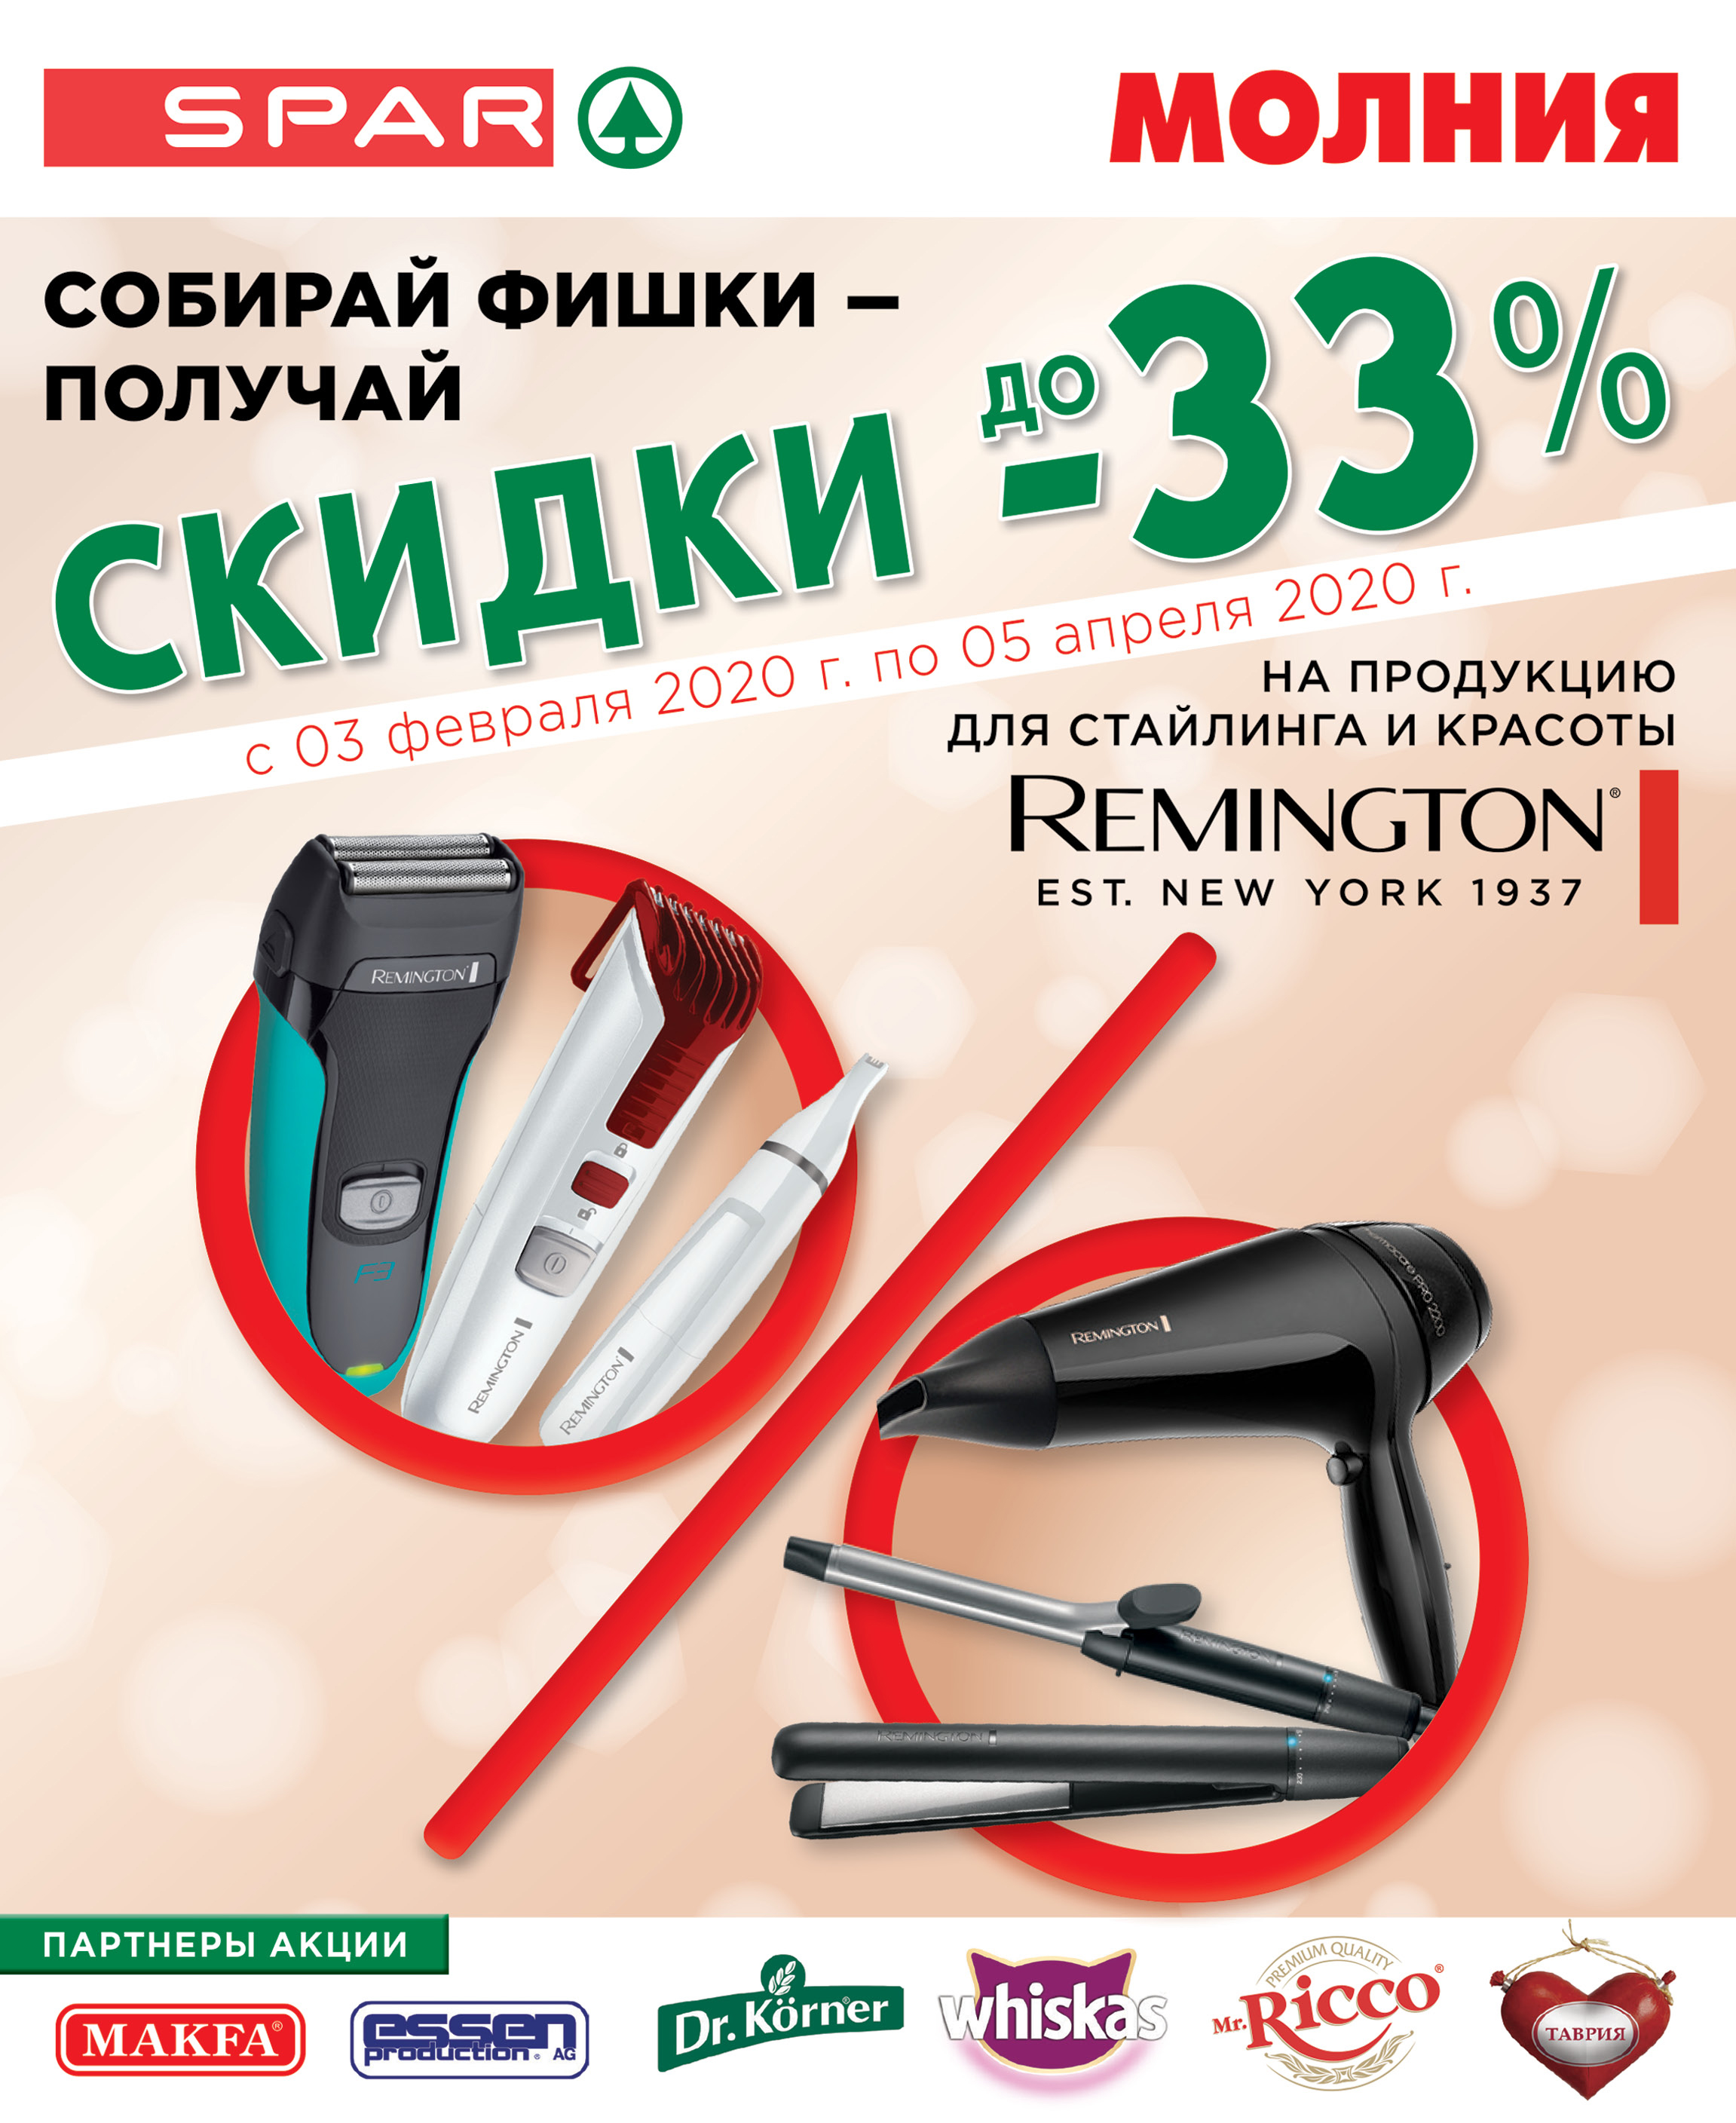 Продукция для стайлинга и красоты от американского бренда Remington по очень привлекательной цене!